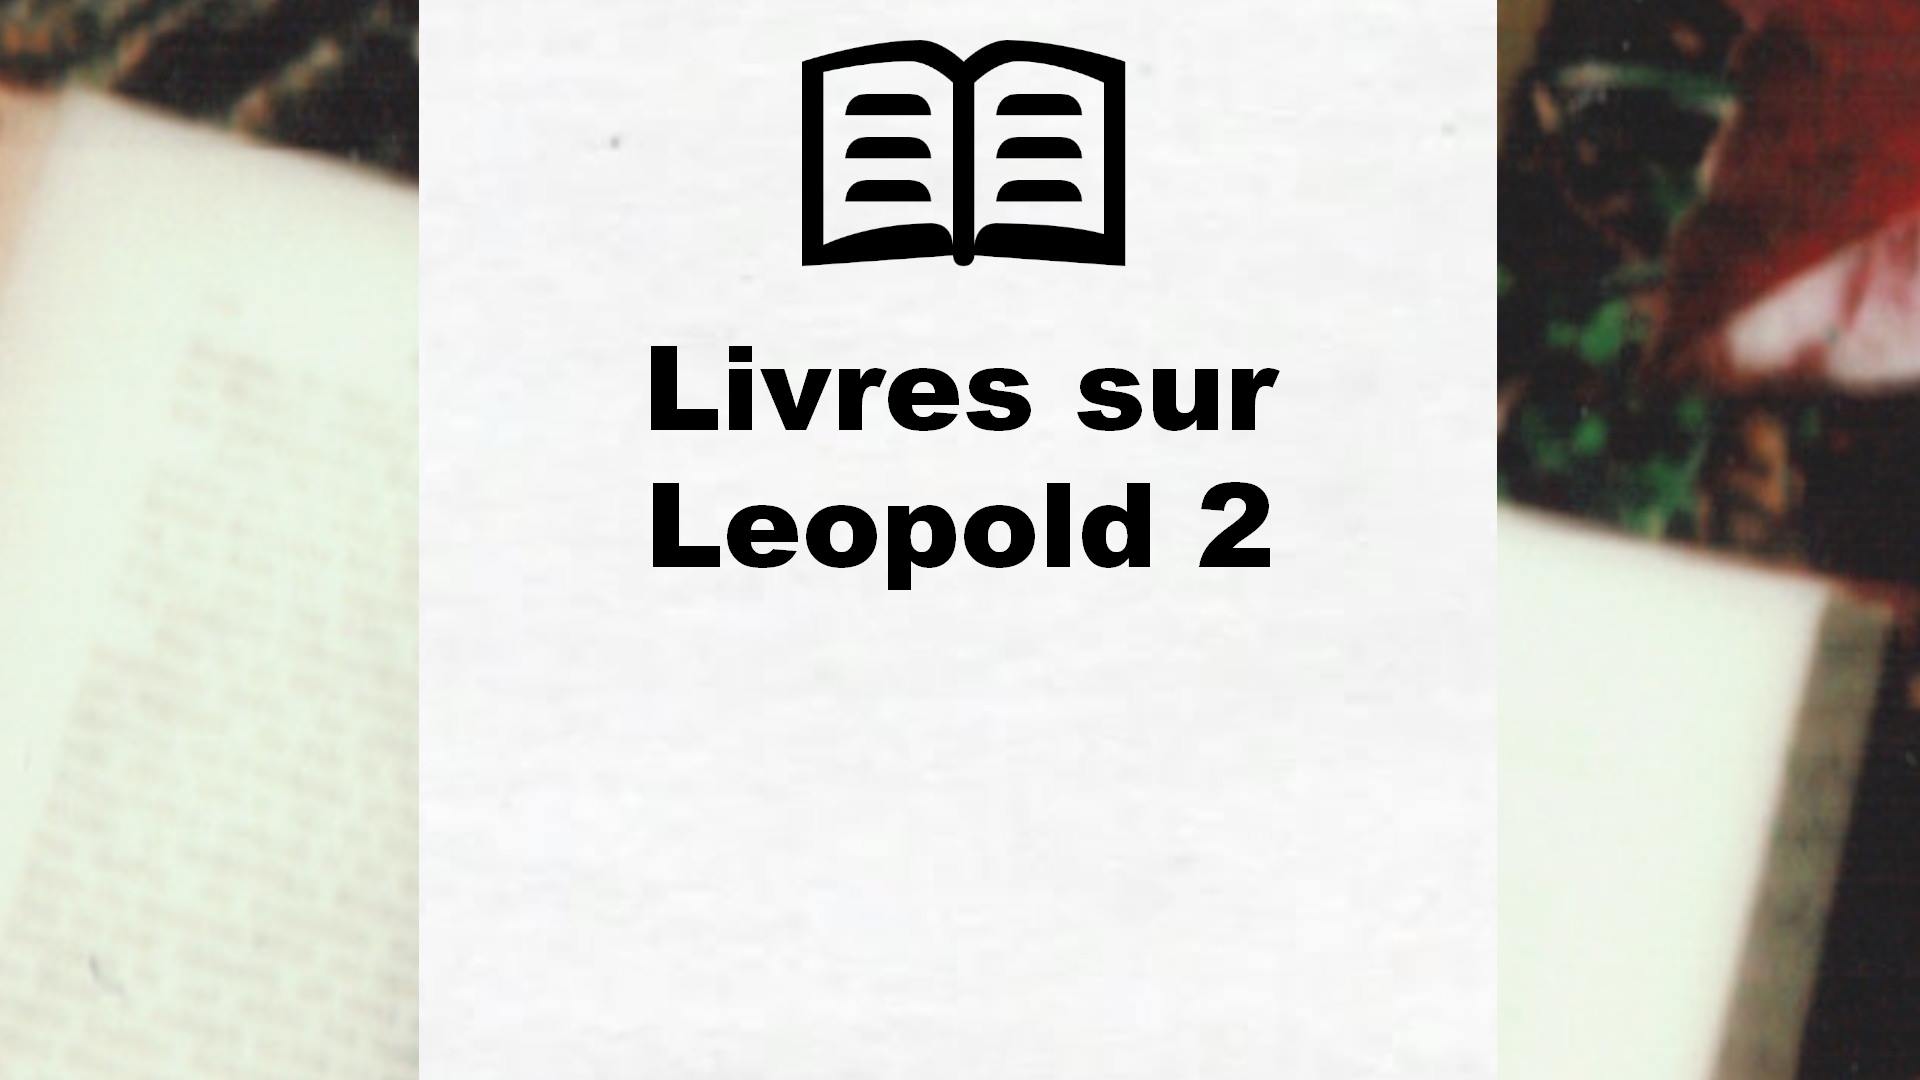 Livres sur Leopold 2